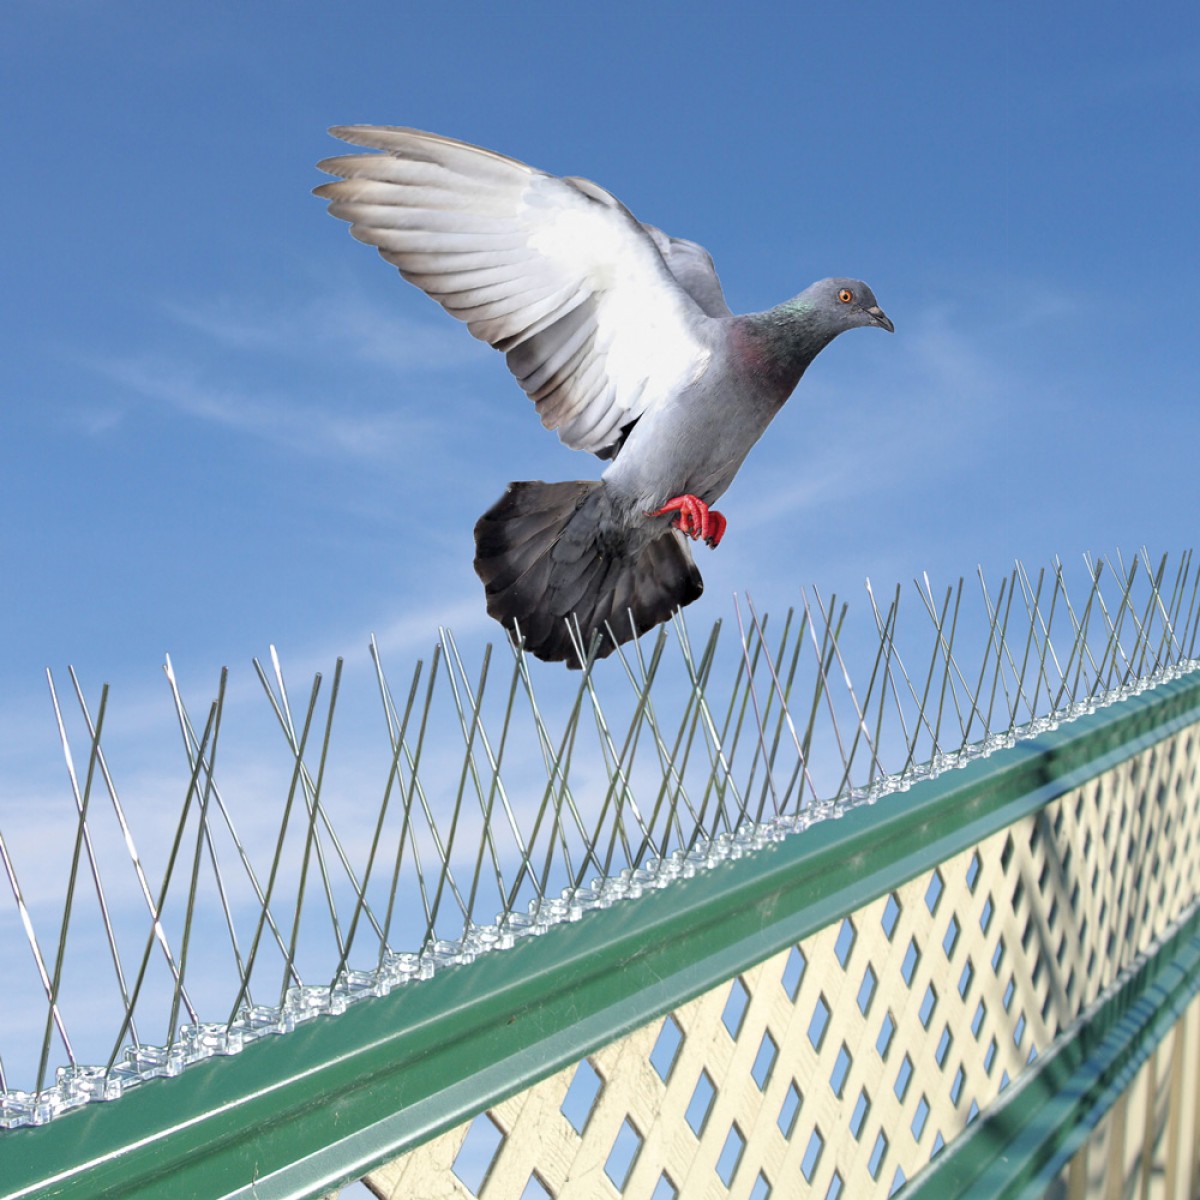 Bird Net: (Pigeon Nets / Spikes)